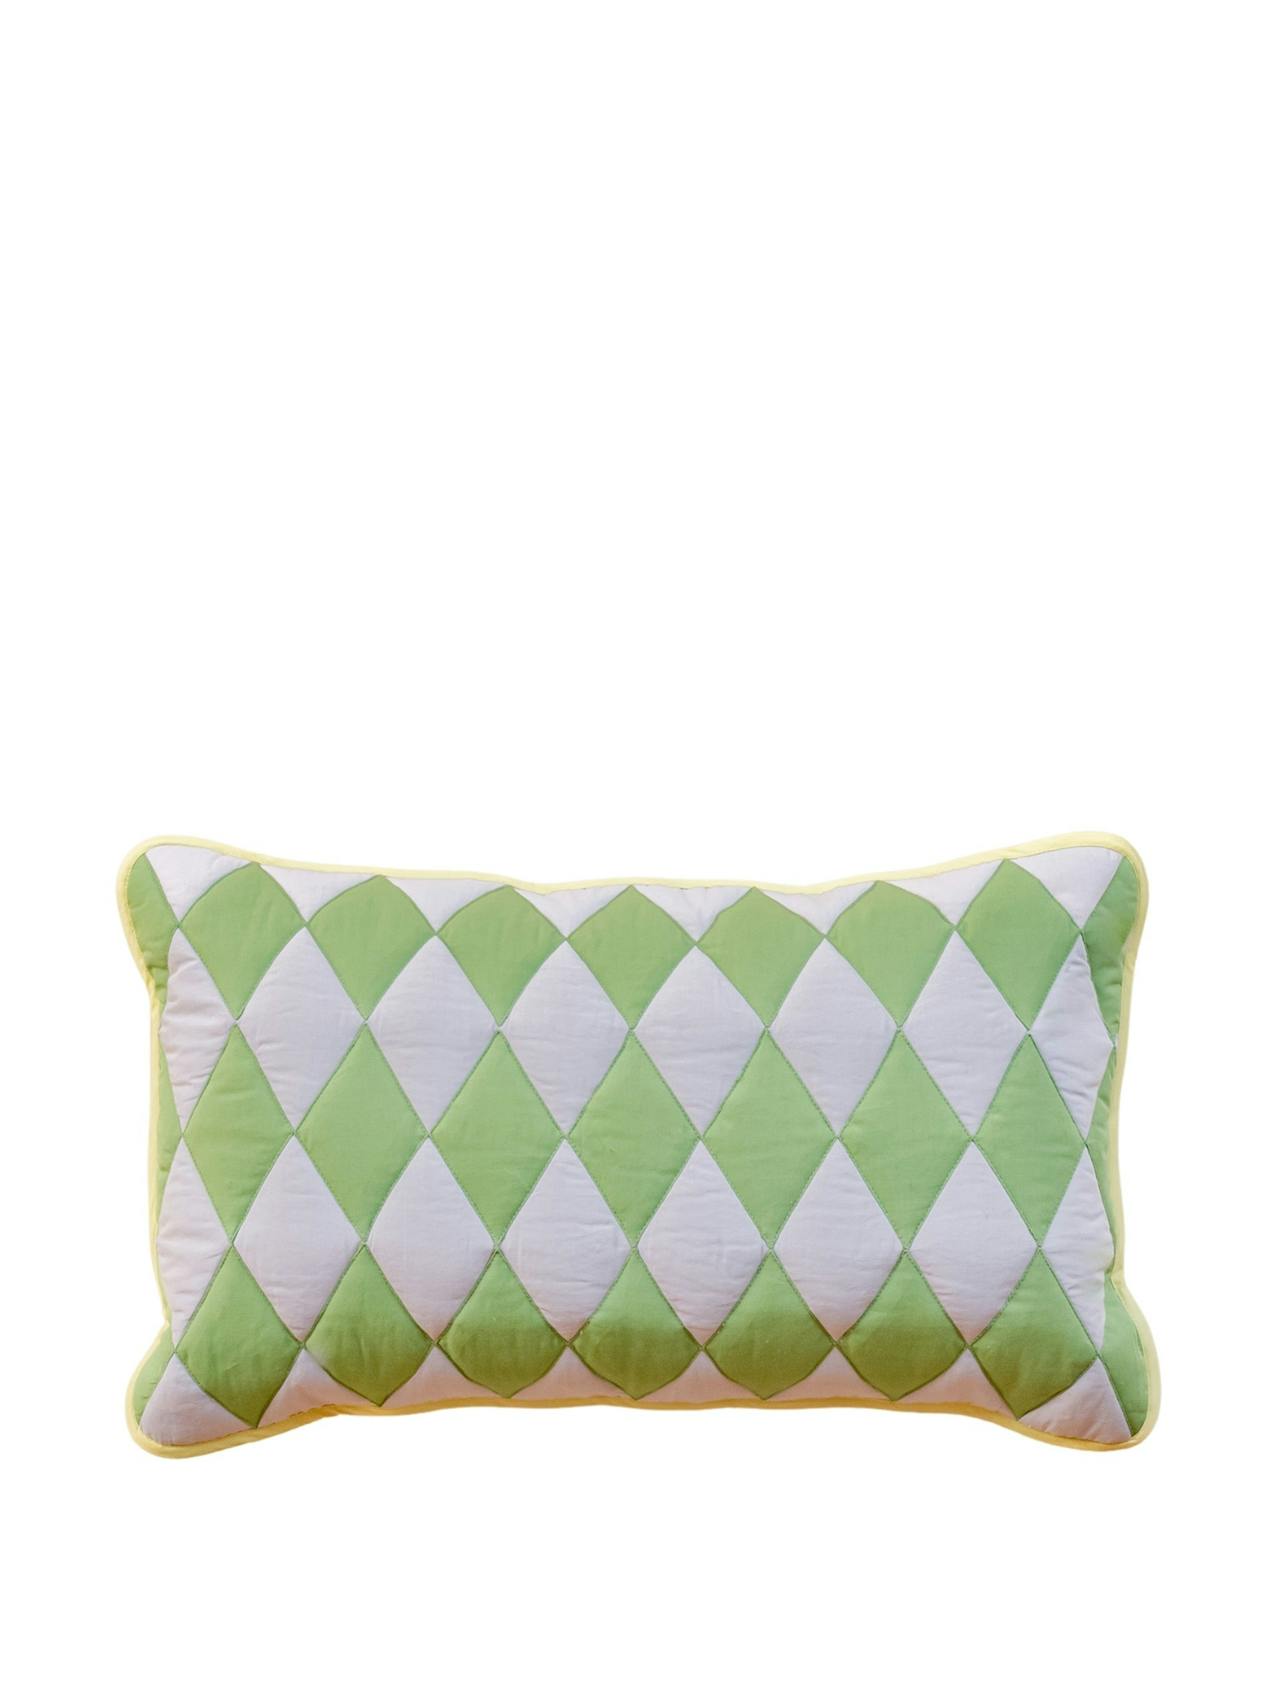 Green argyle cotton cushion cover